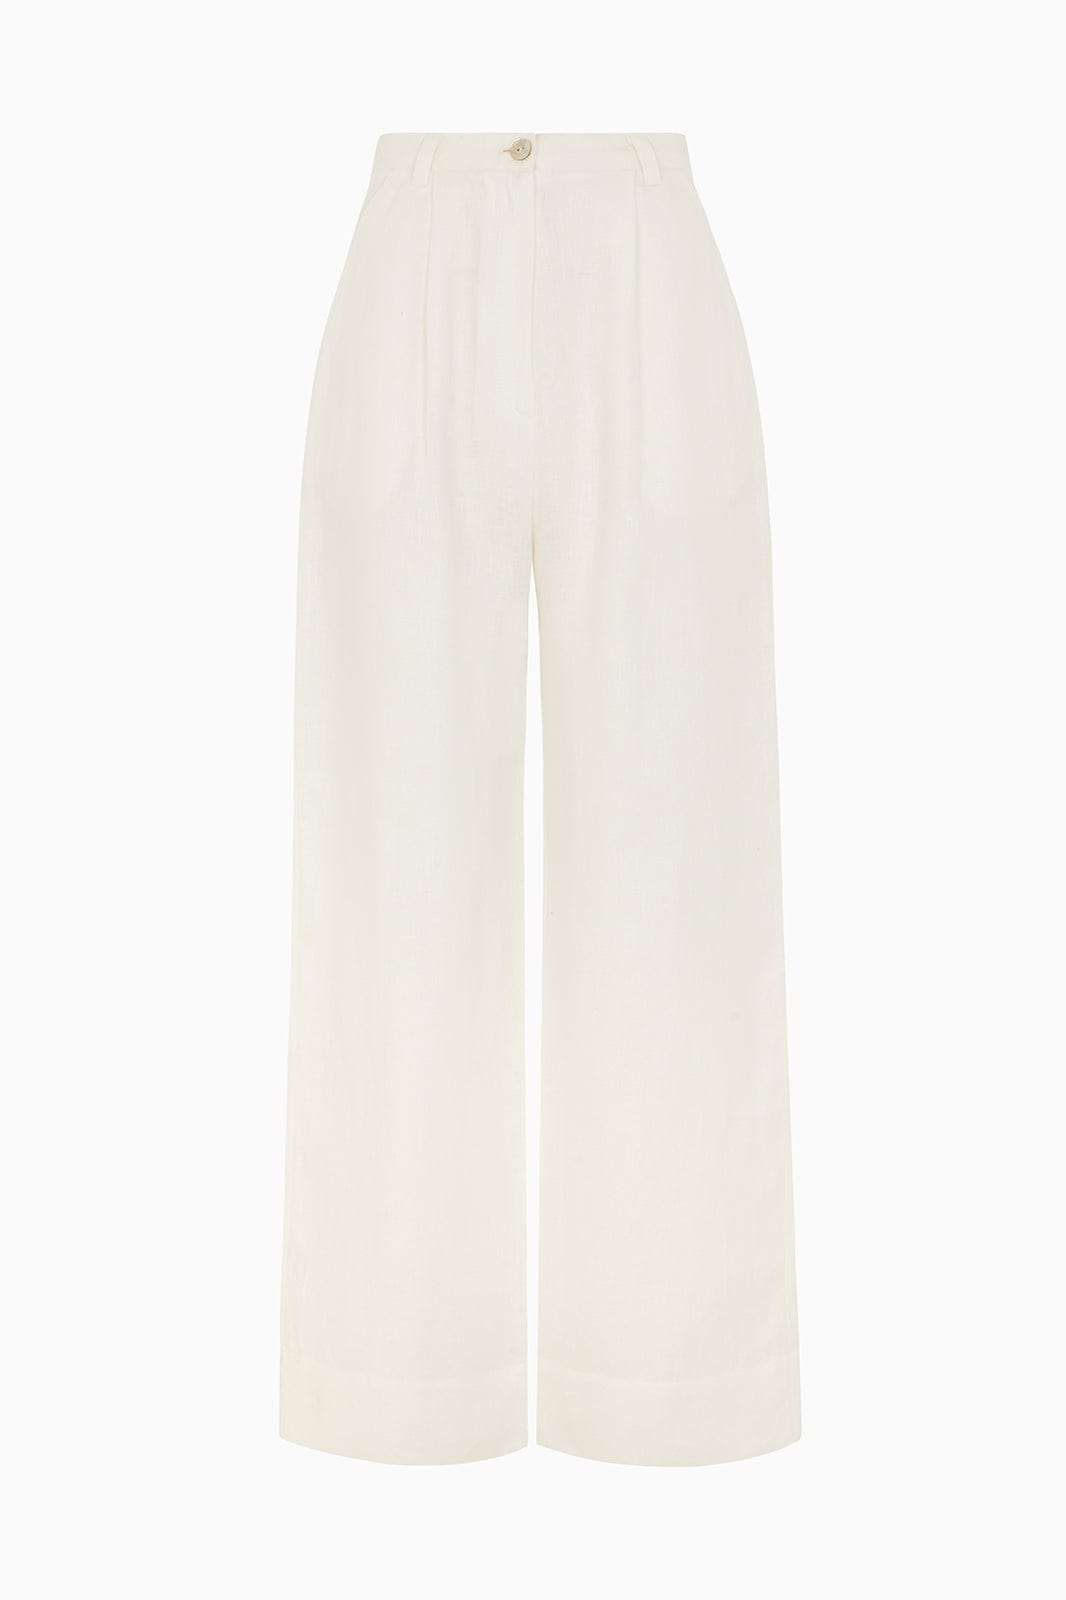 Linen Pants  Lounge Pants  Off White